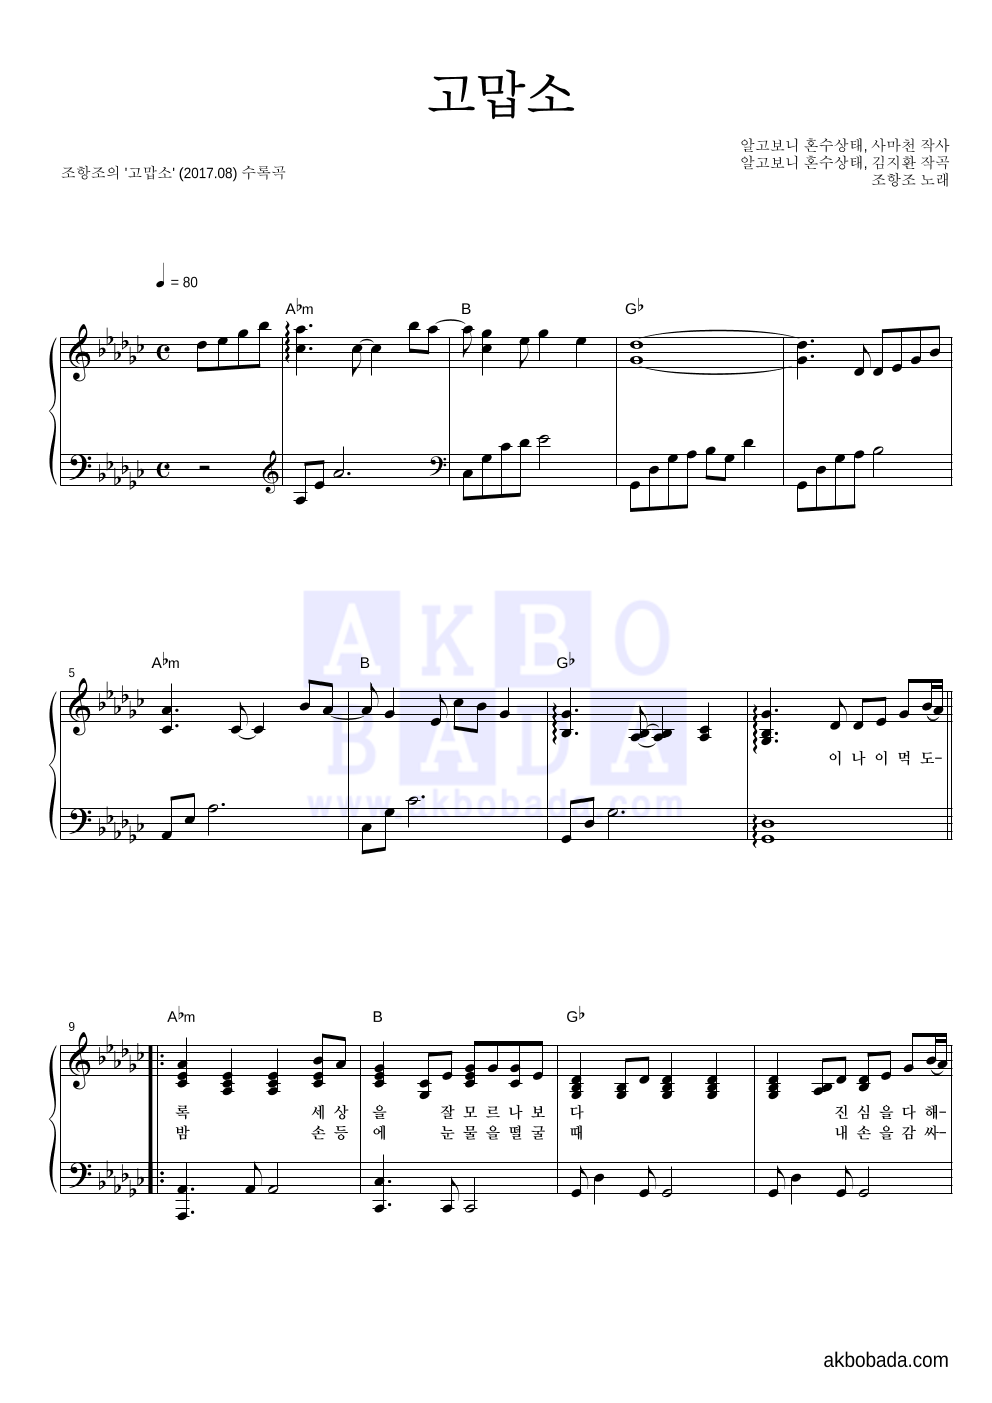 조항조 - 고맙소 피아노 2단 악보 